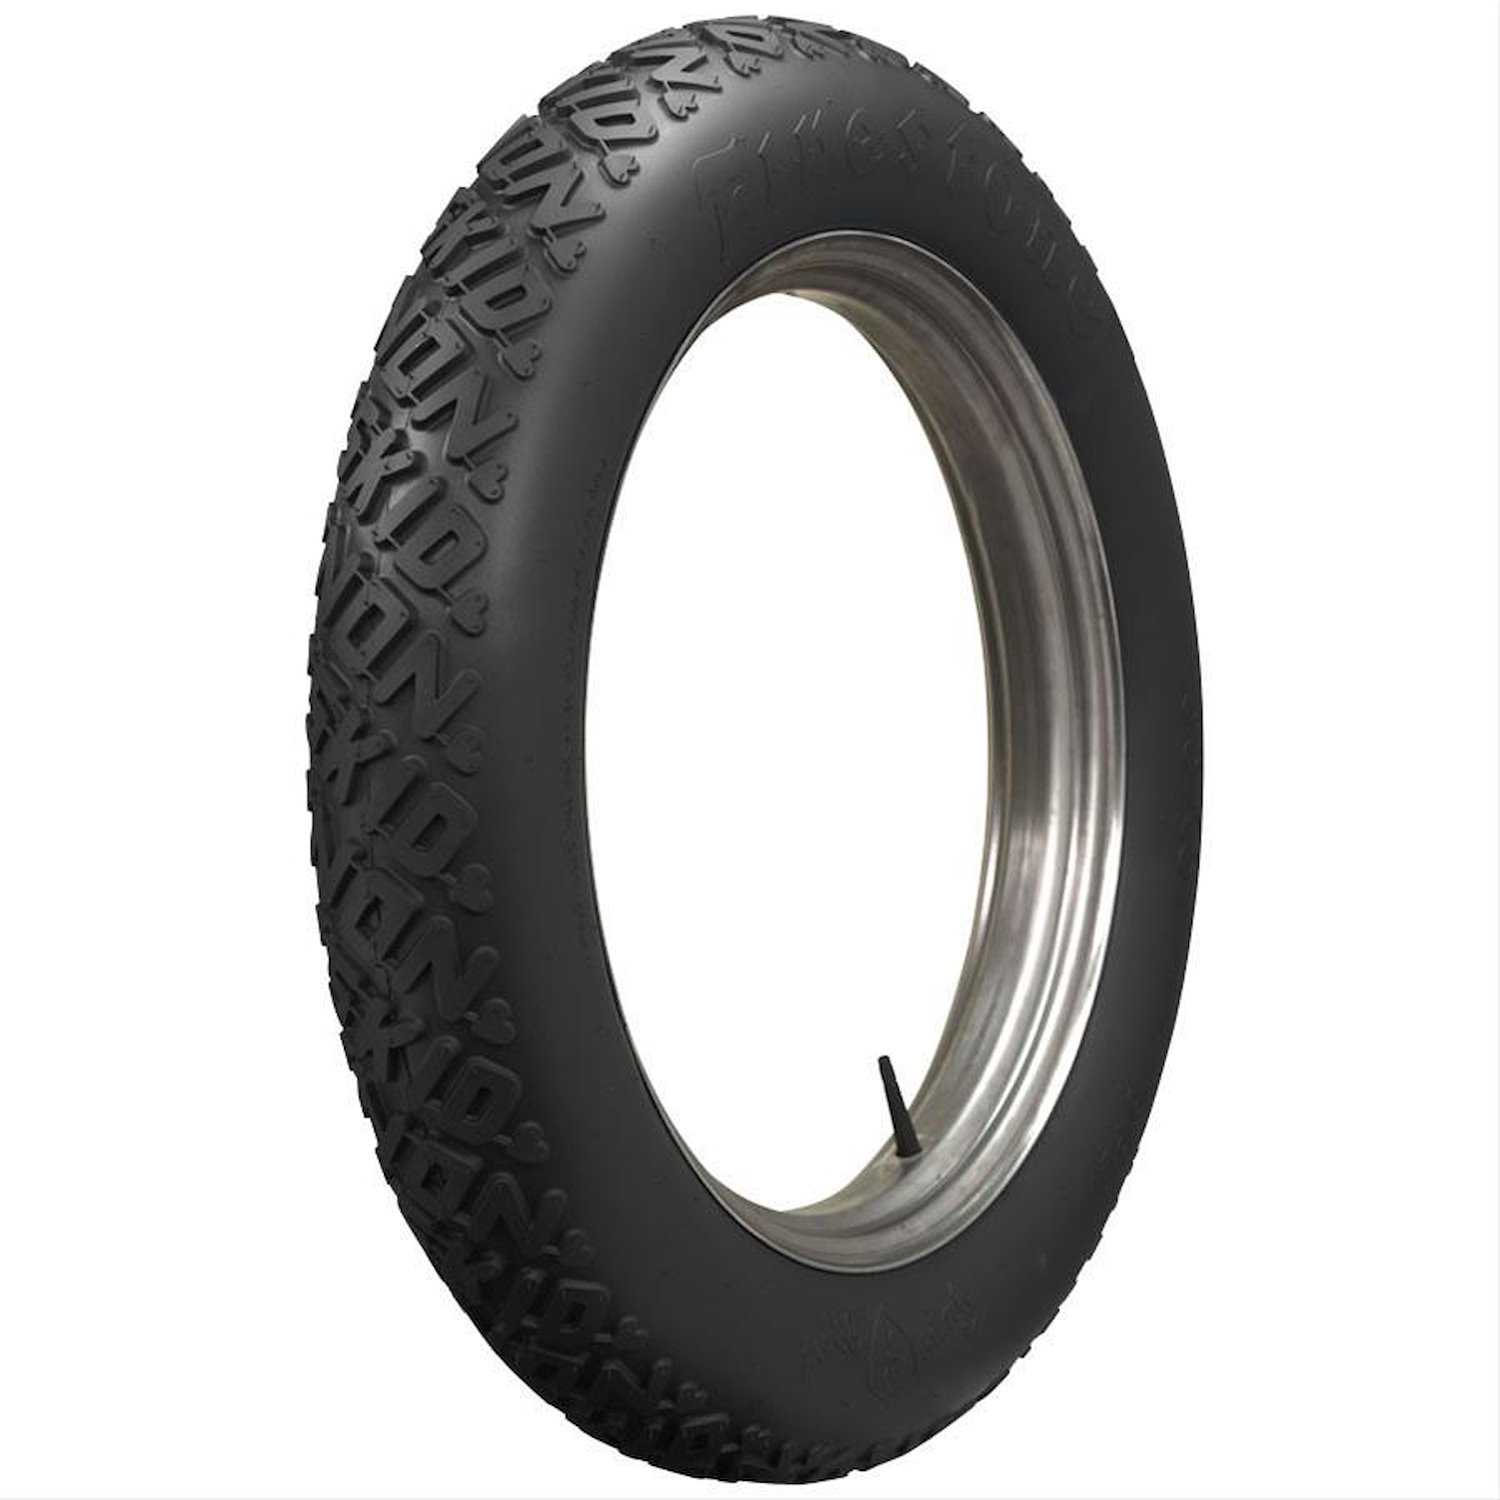 79249 Tire, Firestone Non-Skid Cycle, Black, 28x25-Inch